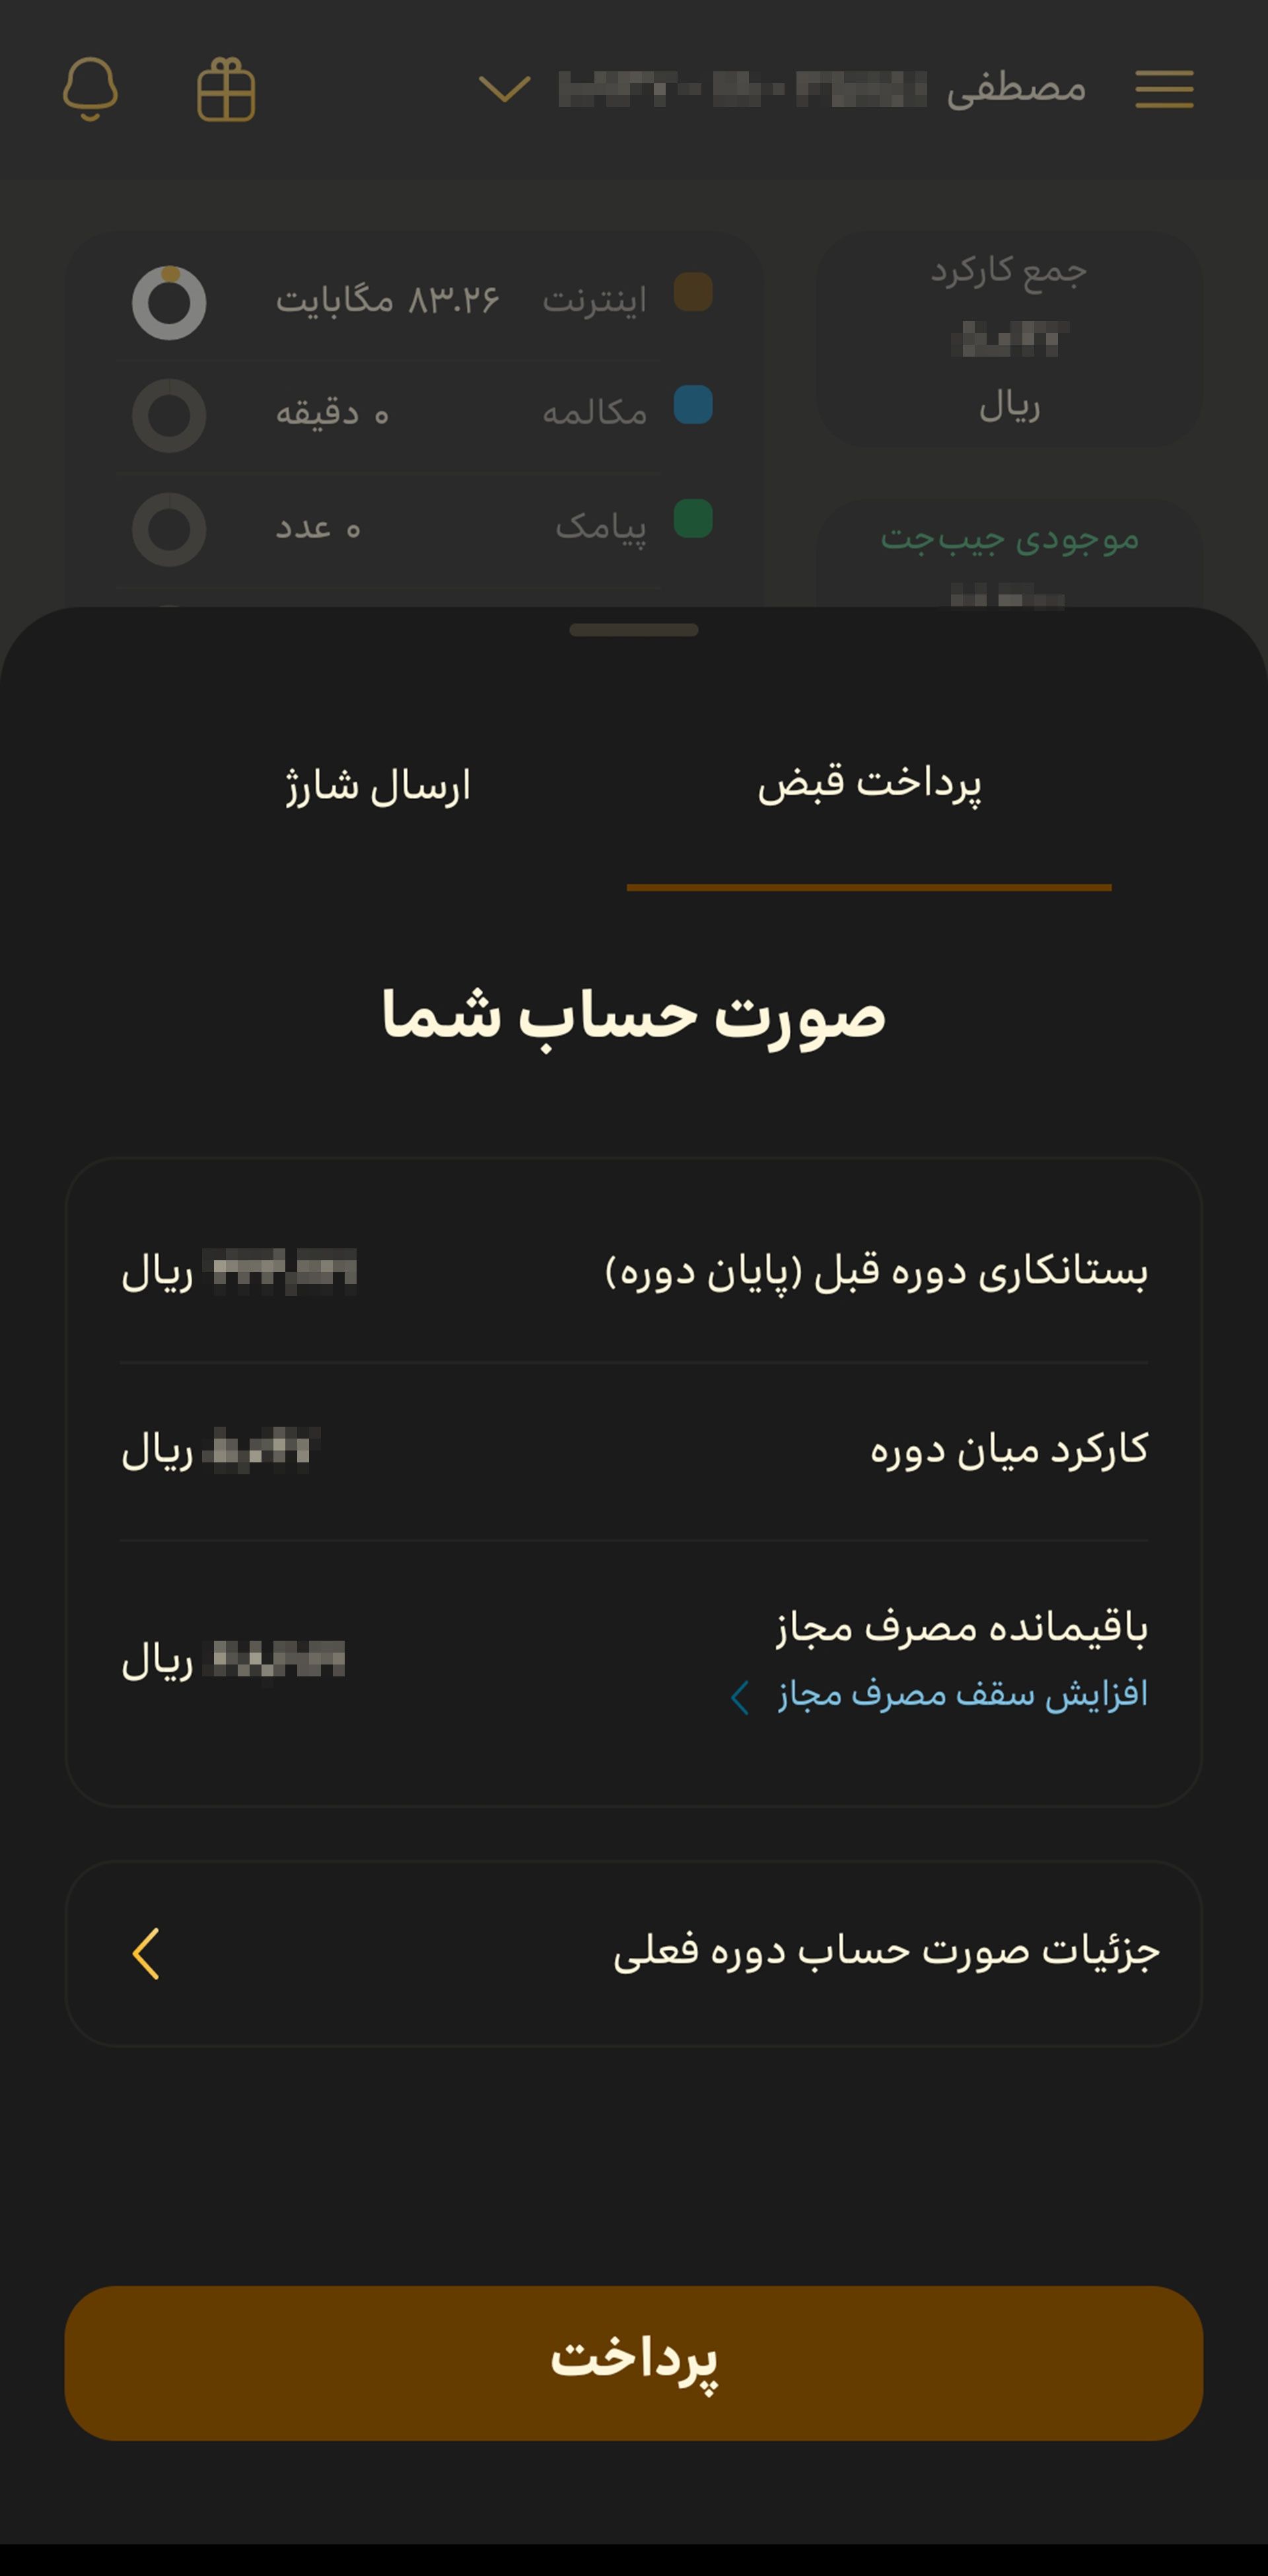 صفحه صورت حساب در اپلیکیشن ایرانسل من